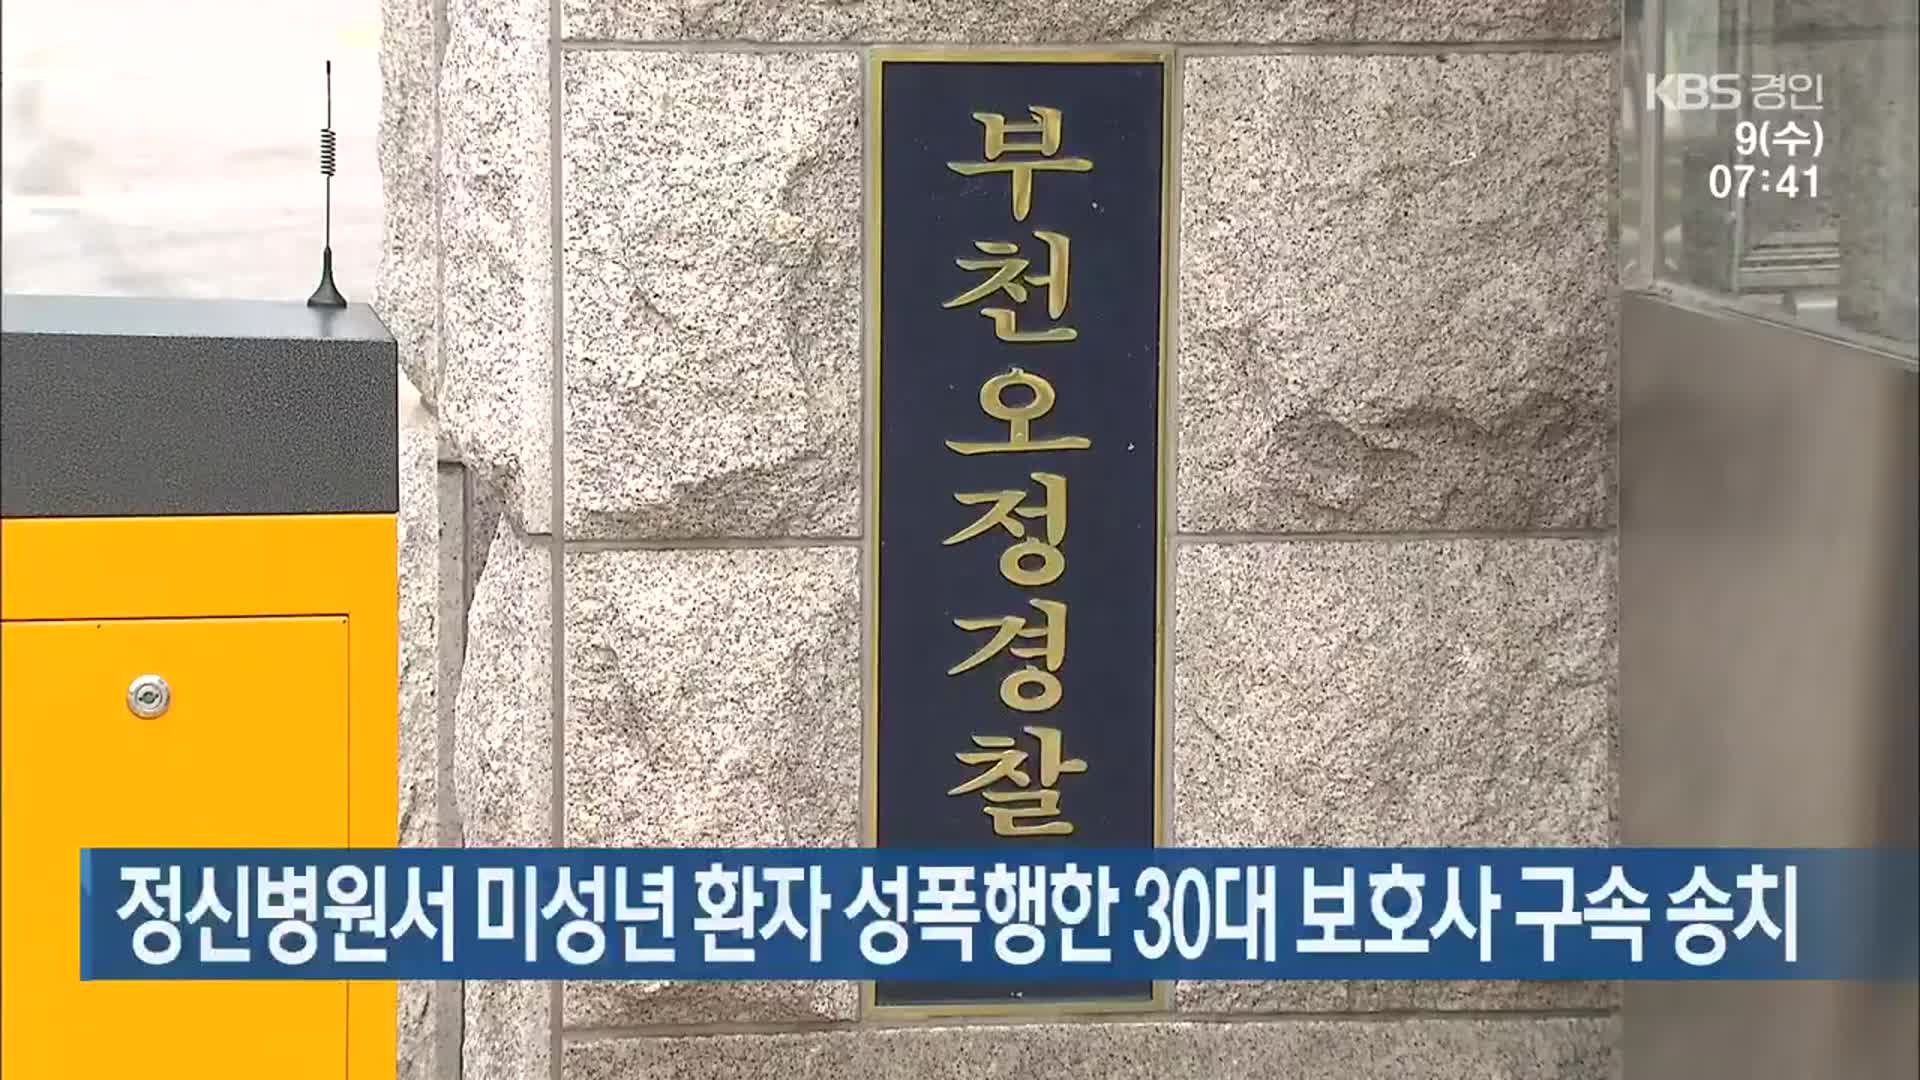 정신병원서 미성년 환자 성폭행한 30대 보호사 구속 송치